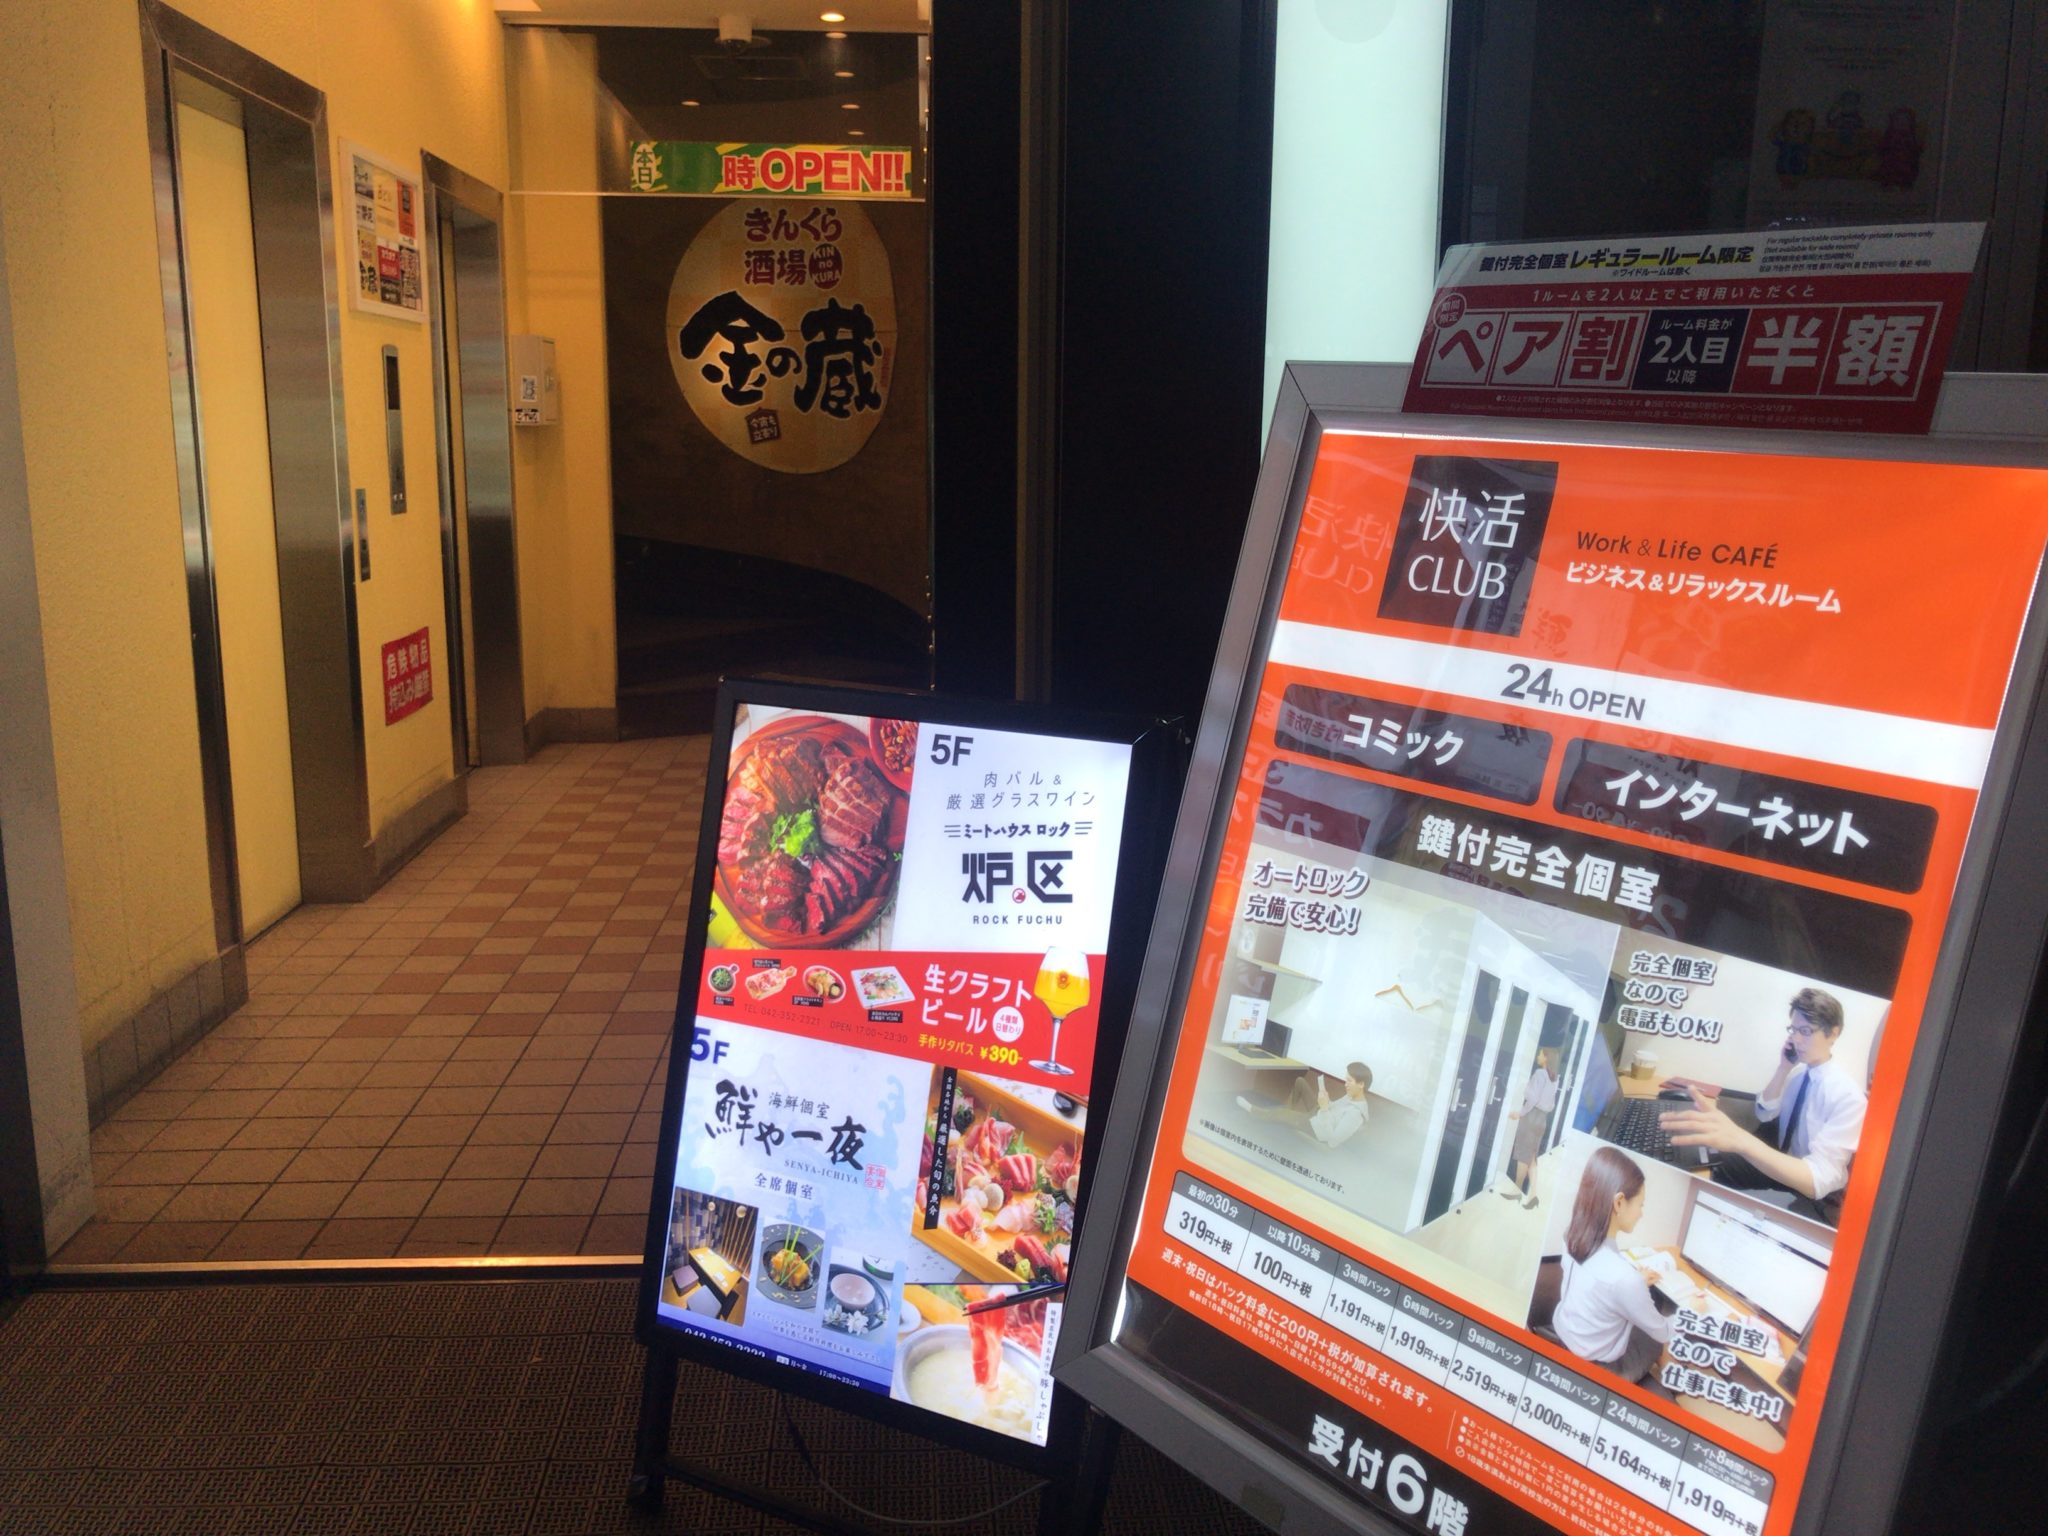 府中駅から徒歩4分 快活club 府中店をレポート 日本全国のネカフェ 漫画喫茶マップのヒマップ